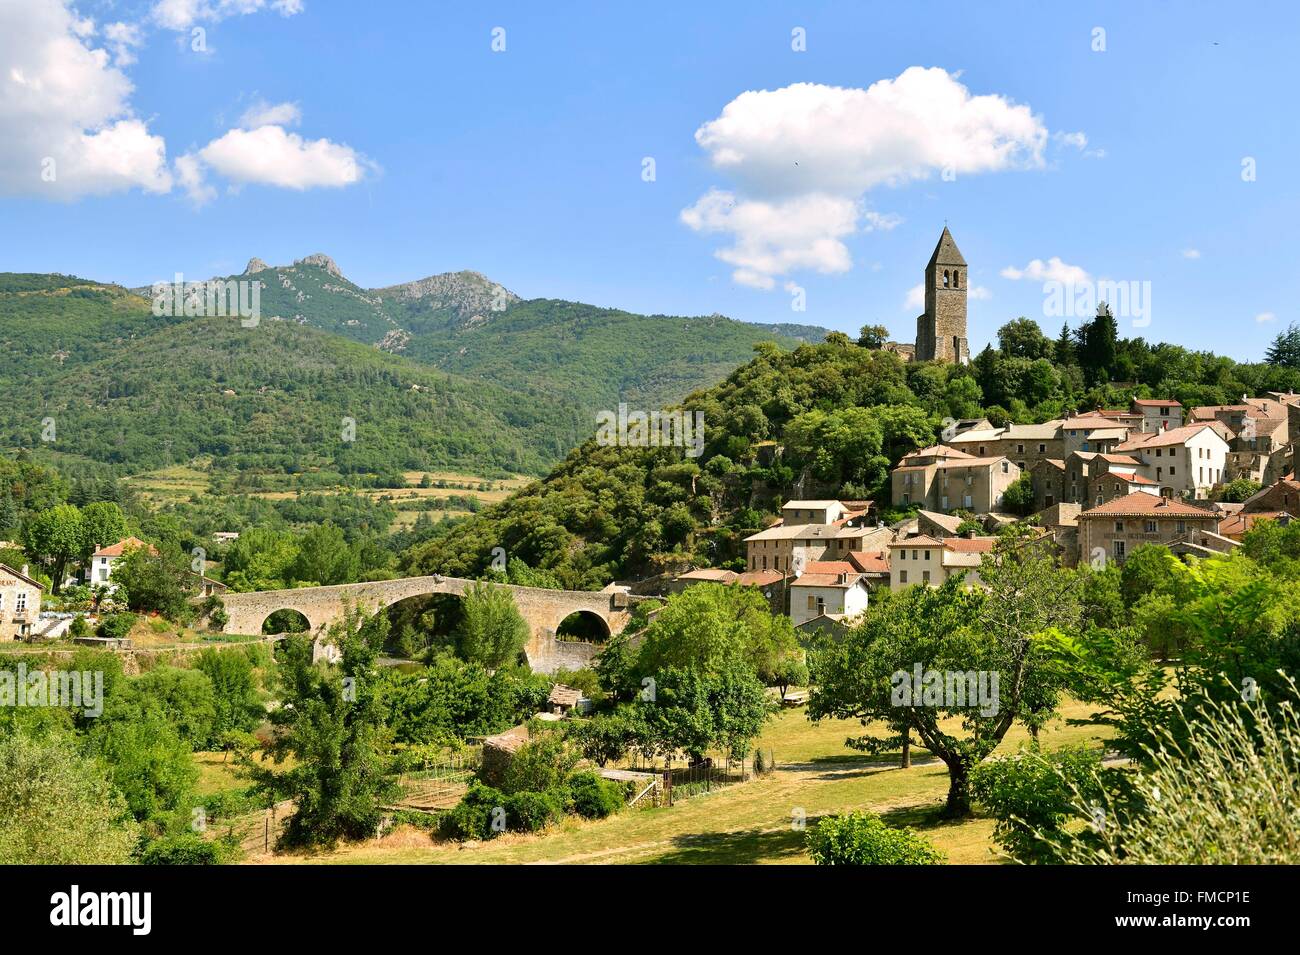 Frankreich, Herault, das mittelalterliche Dorf von Parc Naturel Regional du Haut-Languedoc (natürlichen regionalen Park der Haut Languedoc) Stockfoto